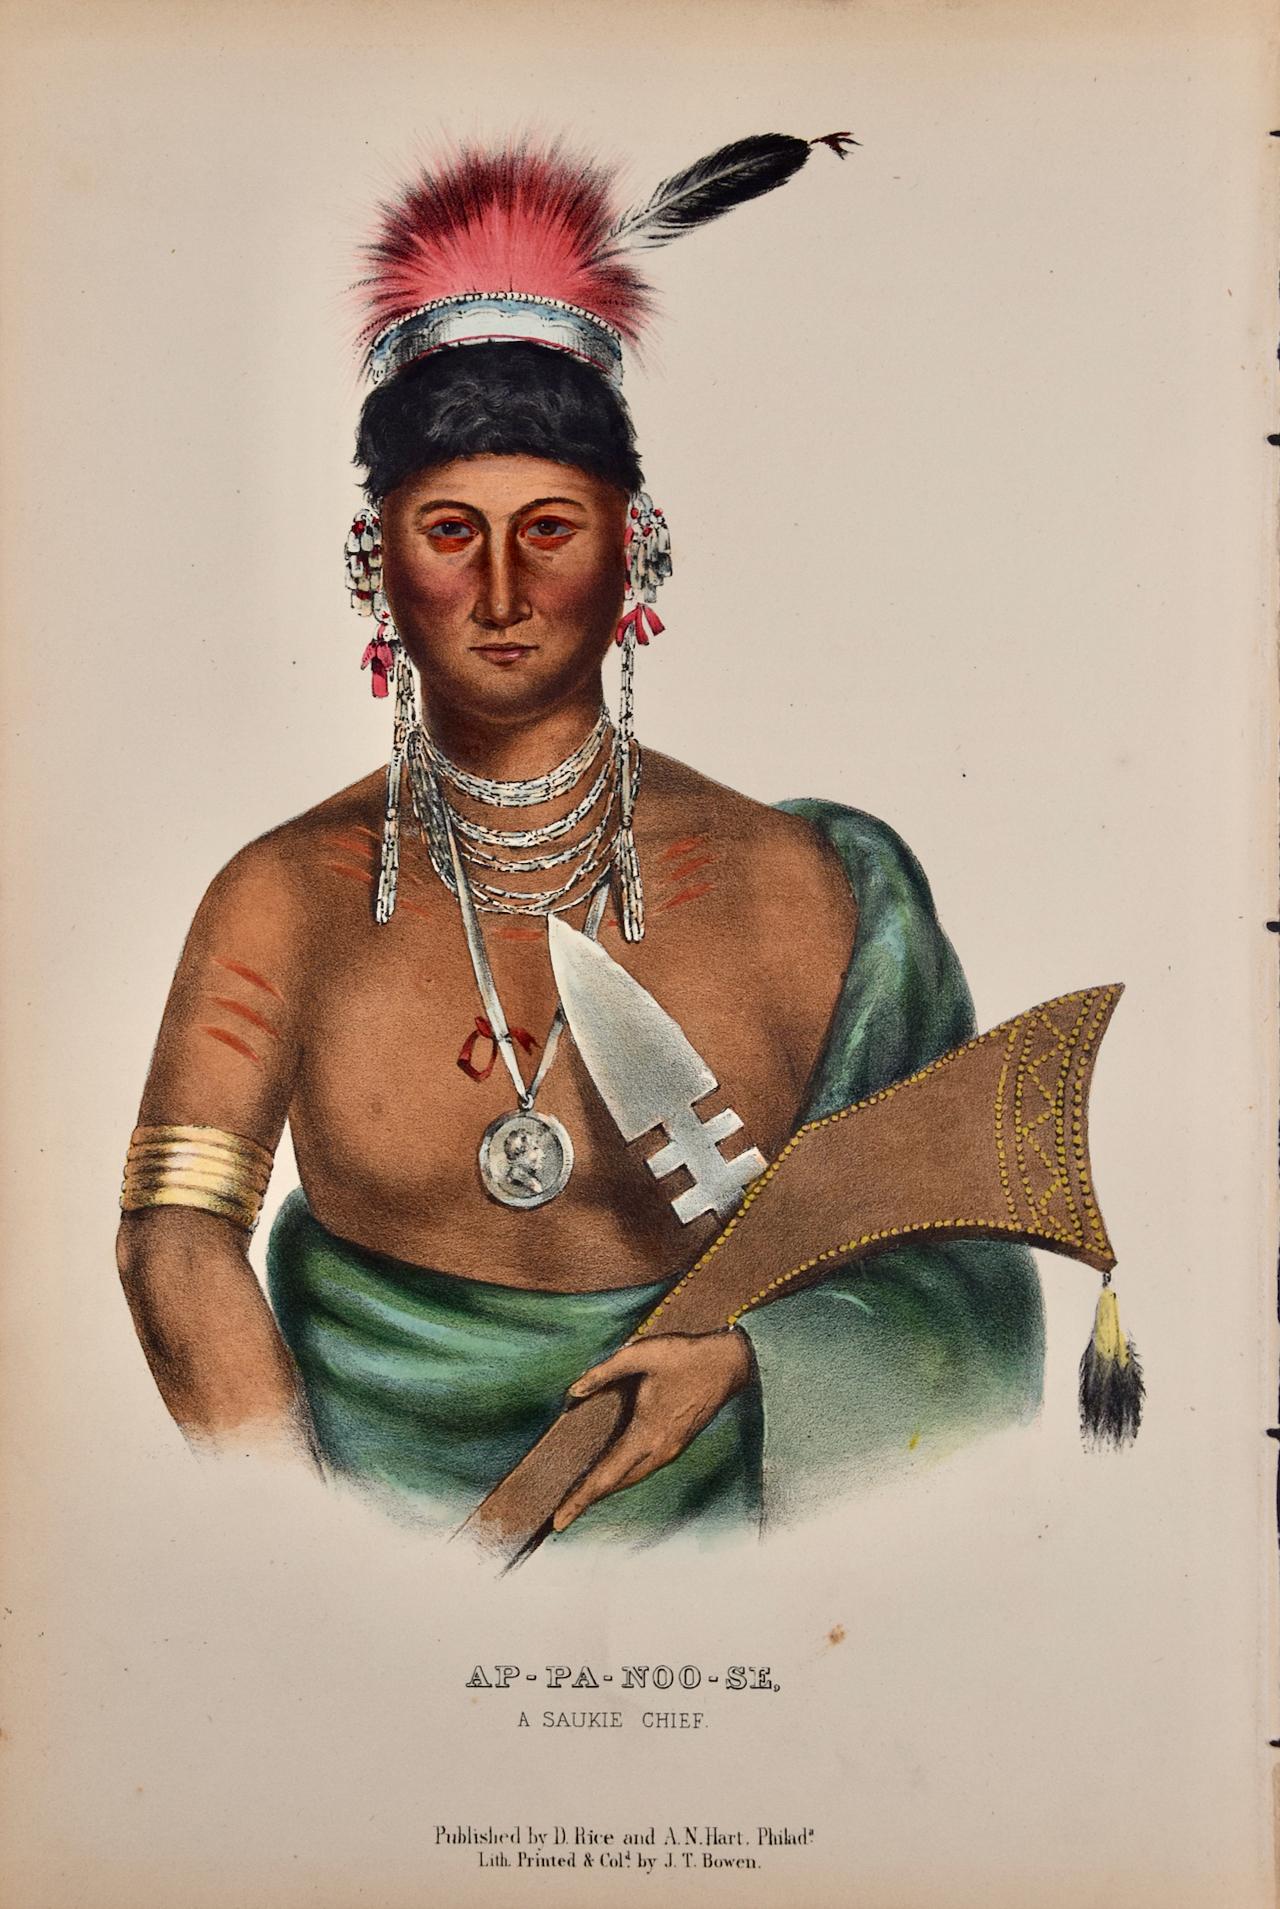 Ap-Pa-Noo-Se, Ein Saukie Chief: Originale handkolorierte McKenney & Hall-Lithographie